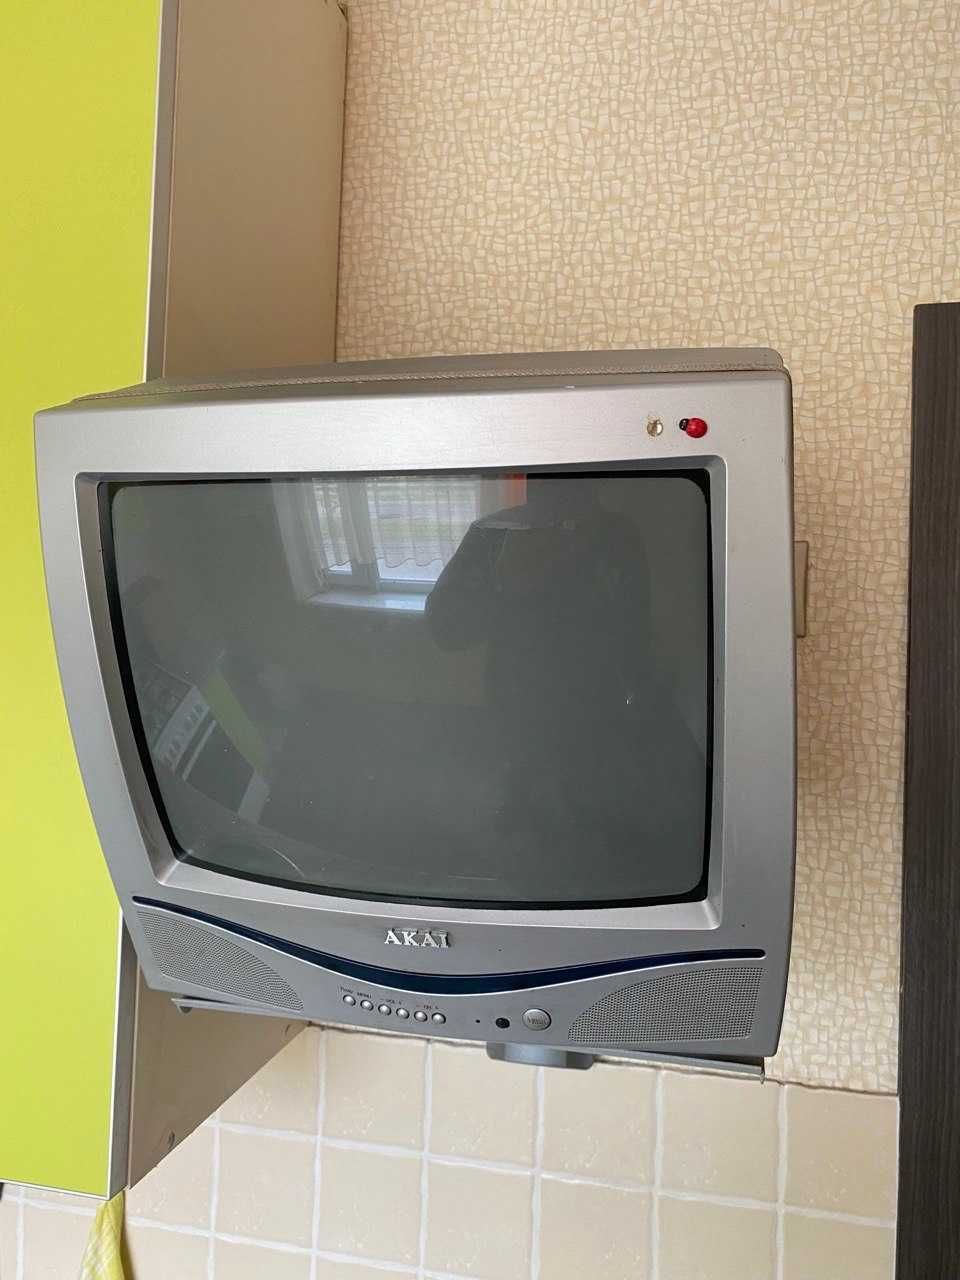 Дешево! Телевизор TV AKAI 14СТ01 (ТВ диагональ 35 см). Для кухни/дачи.